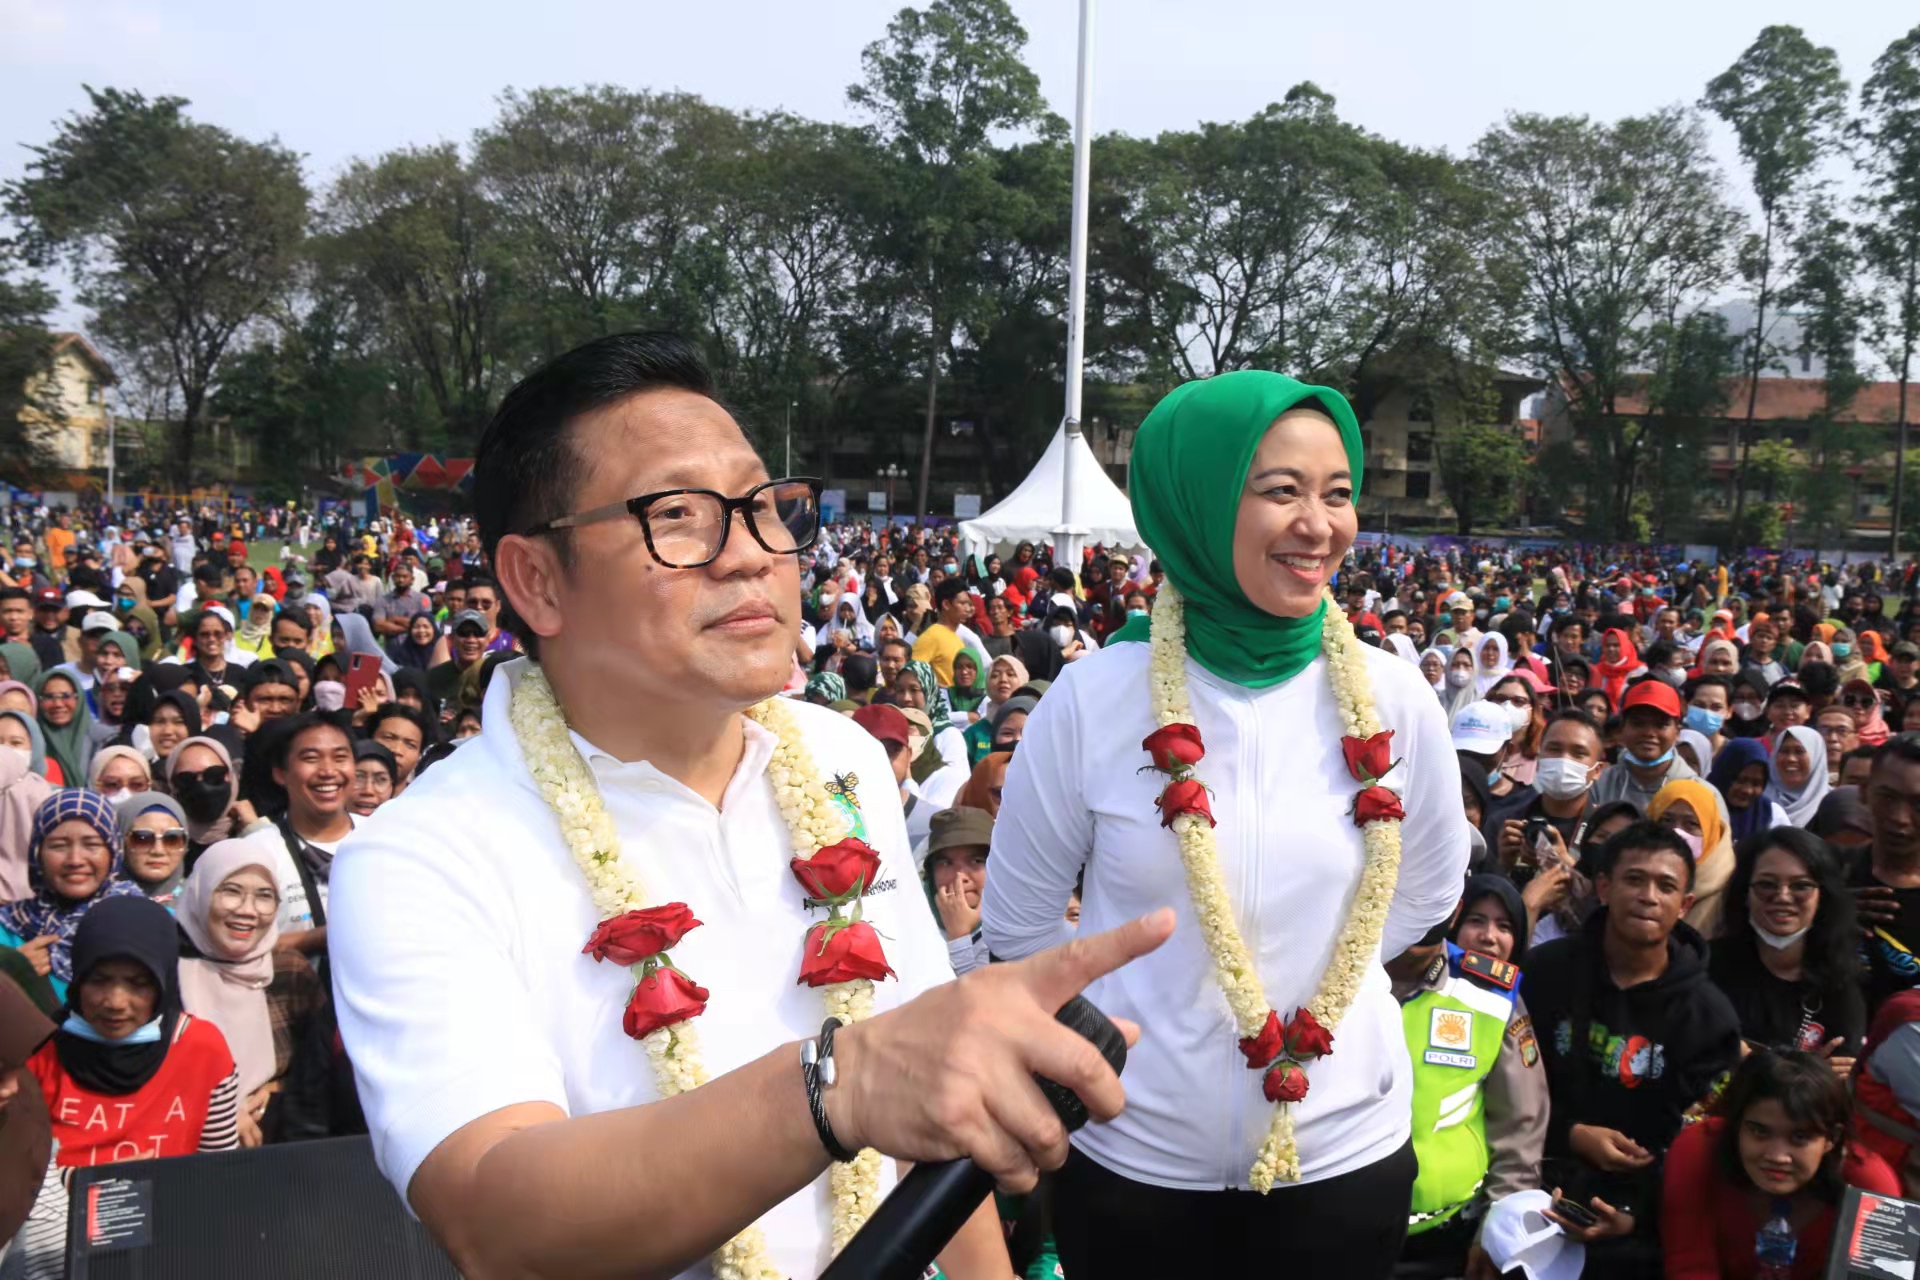 Gandeng Band Kotak, Gus Muhaimin Disambut Ribuan Simpatisan di Kota Tangerang